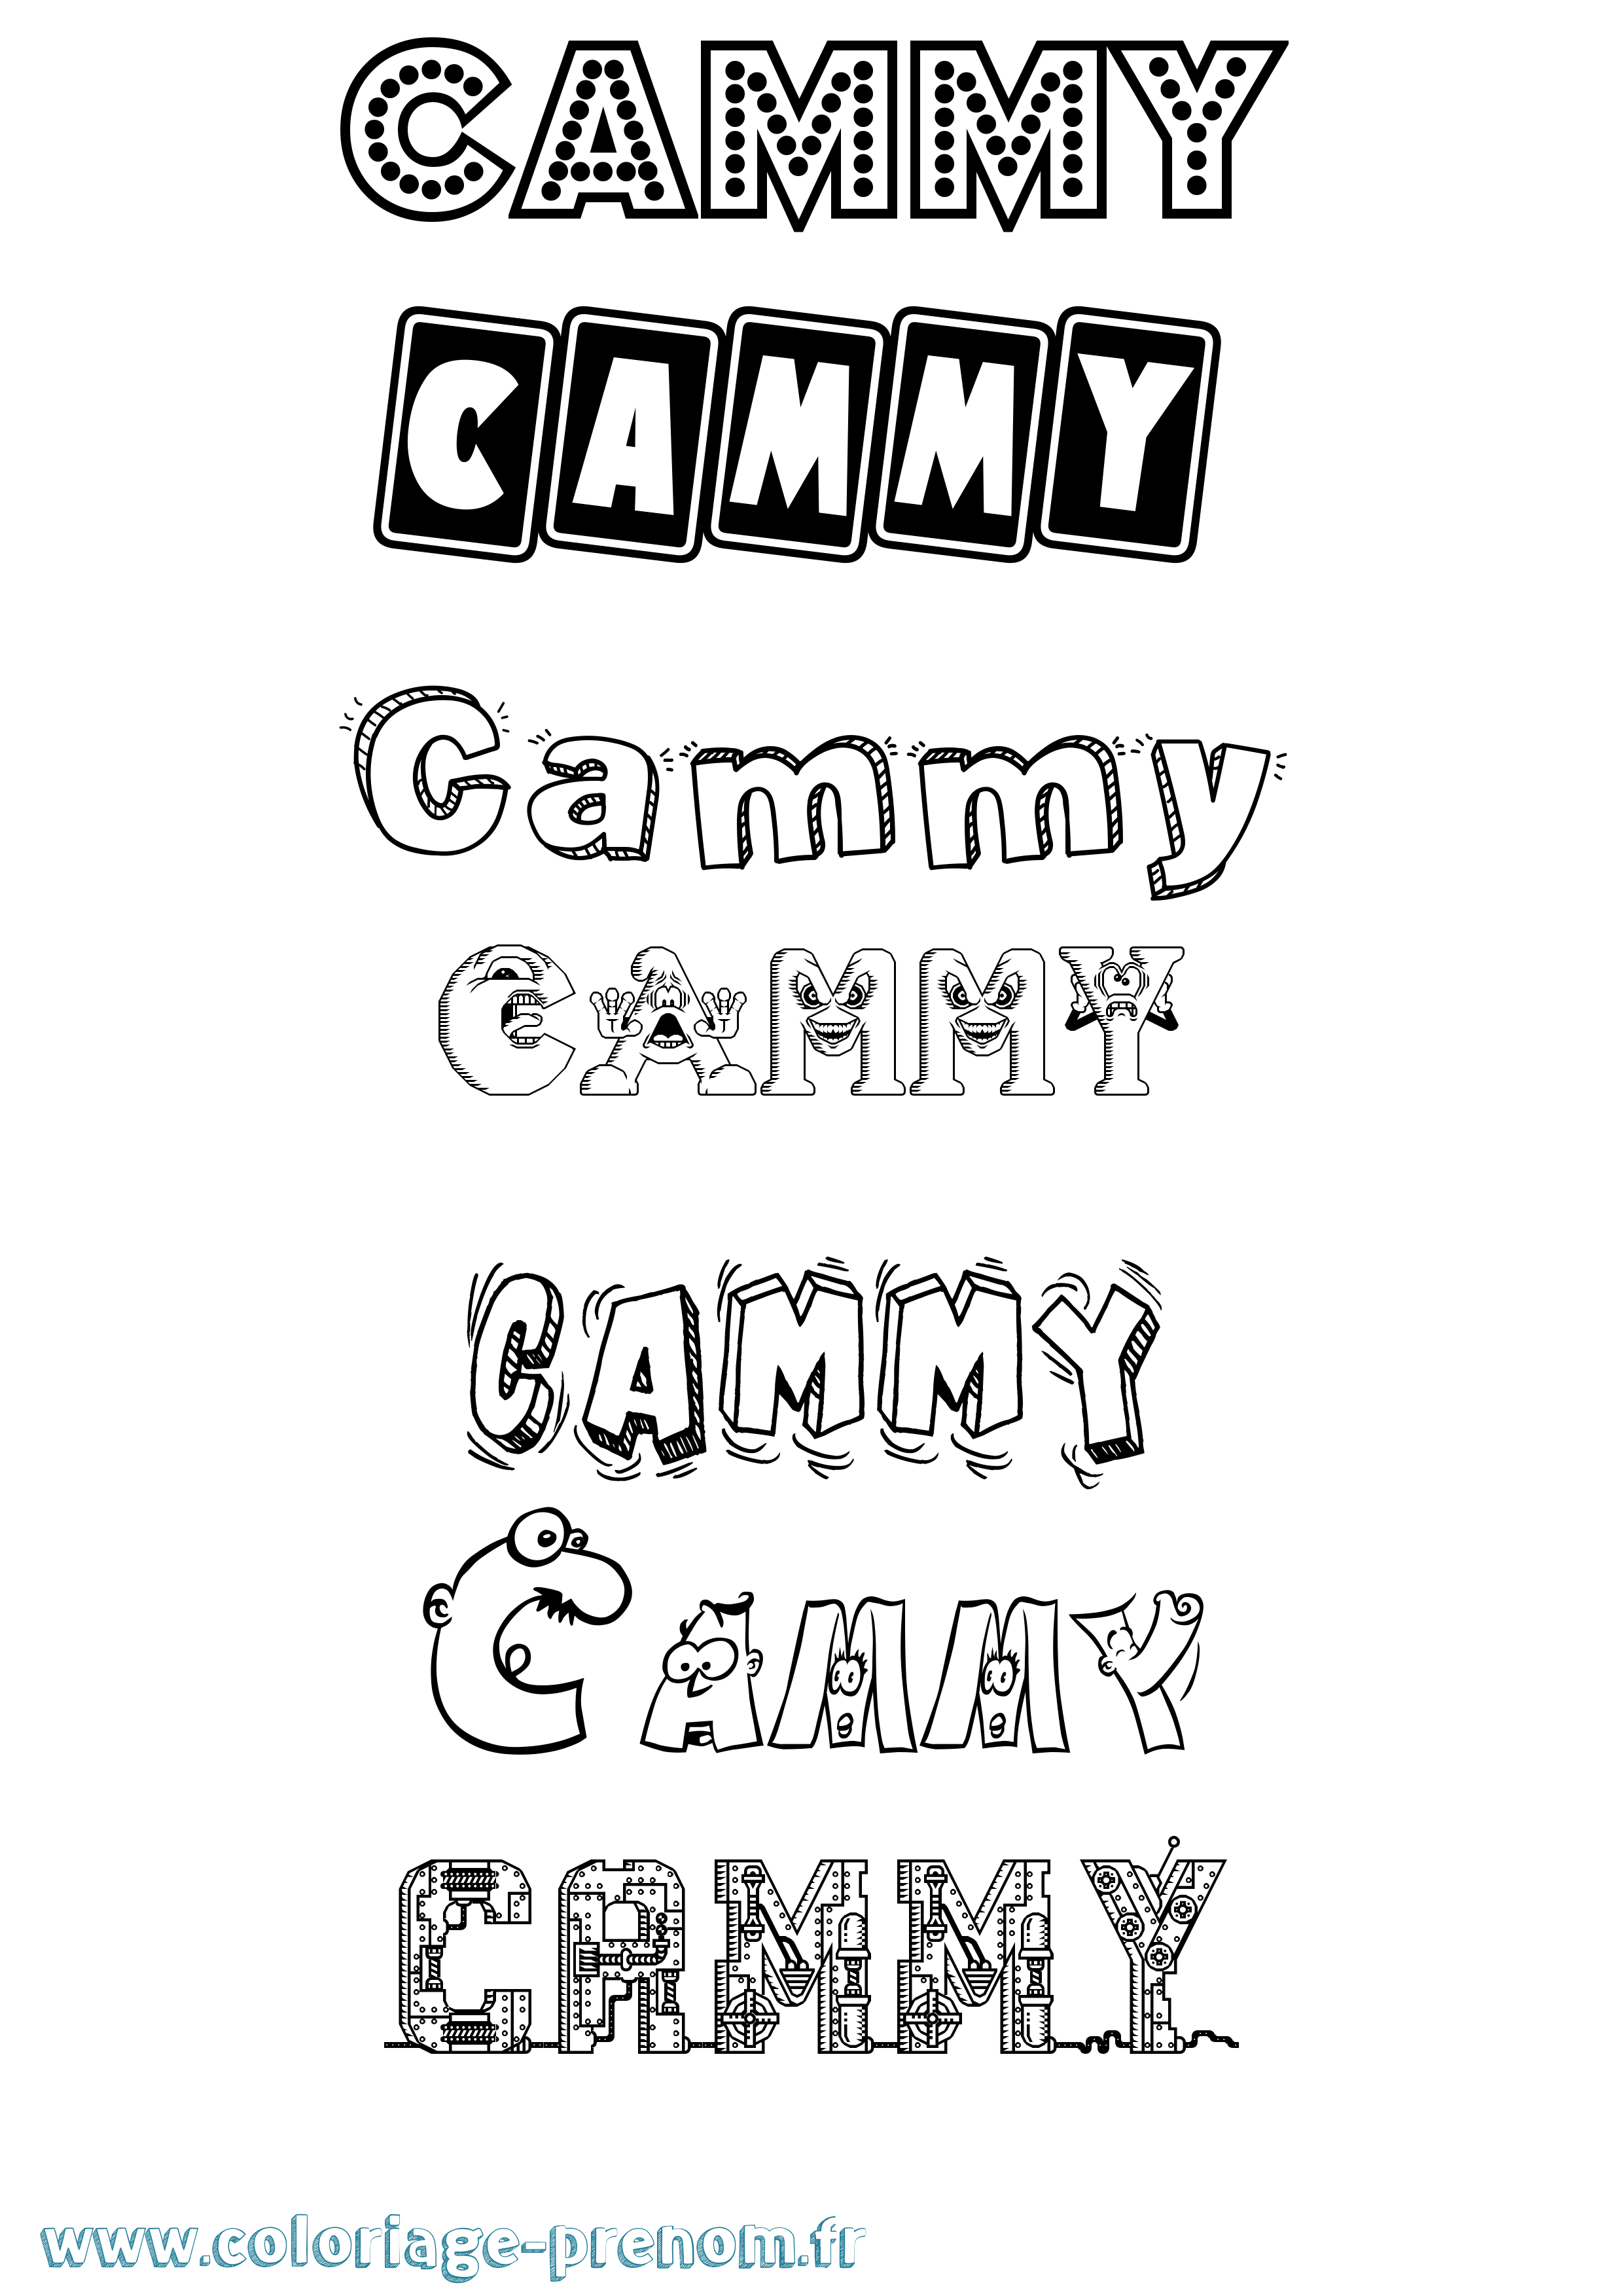 Coloriage prénom Cammy Fun